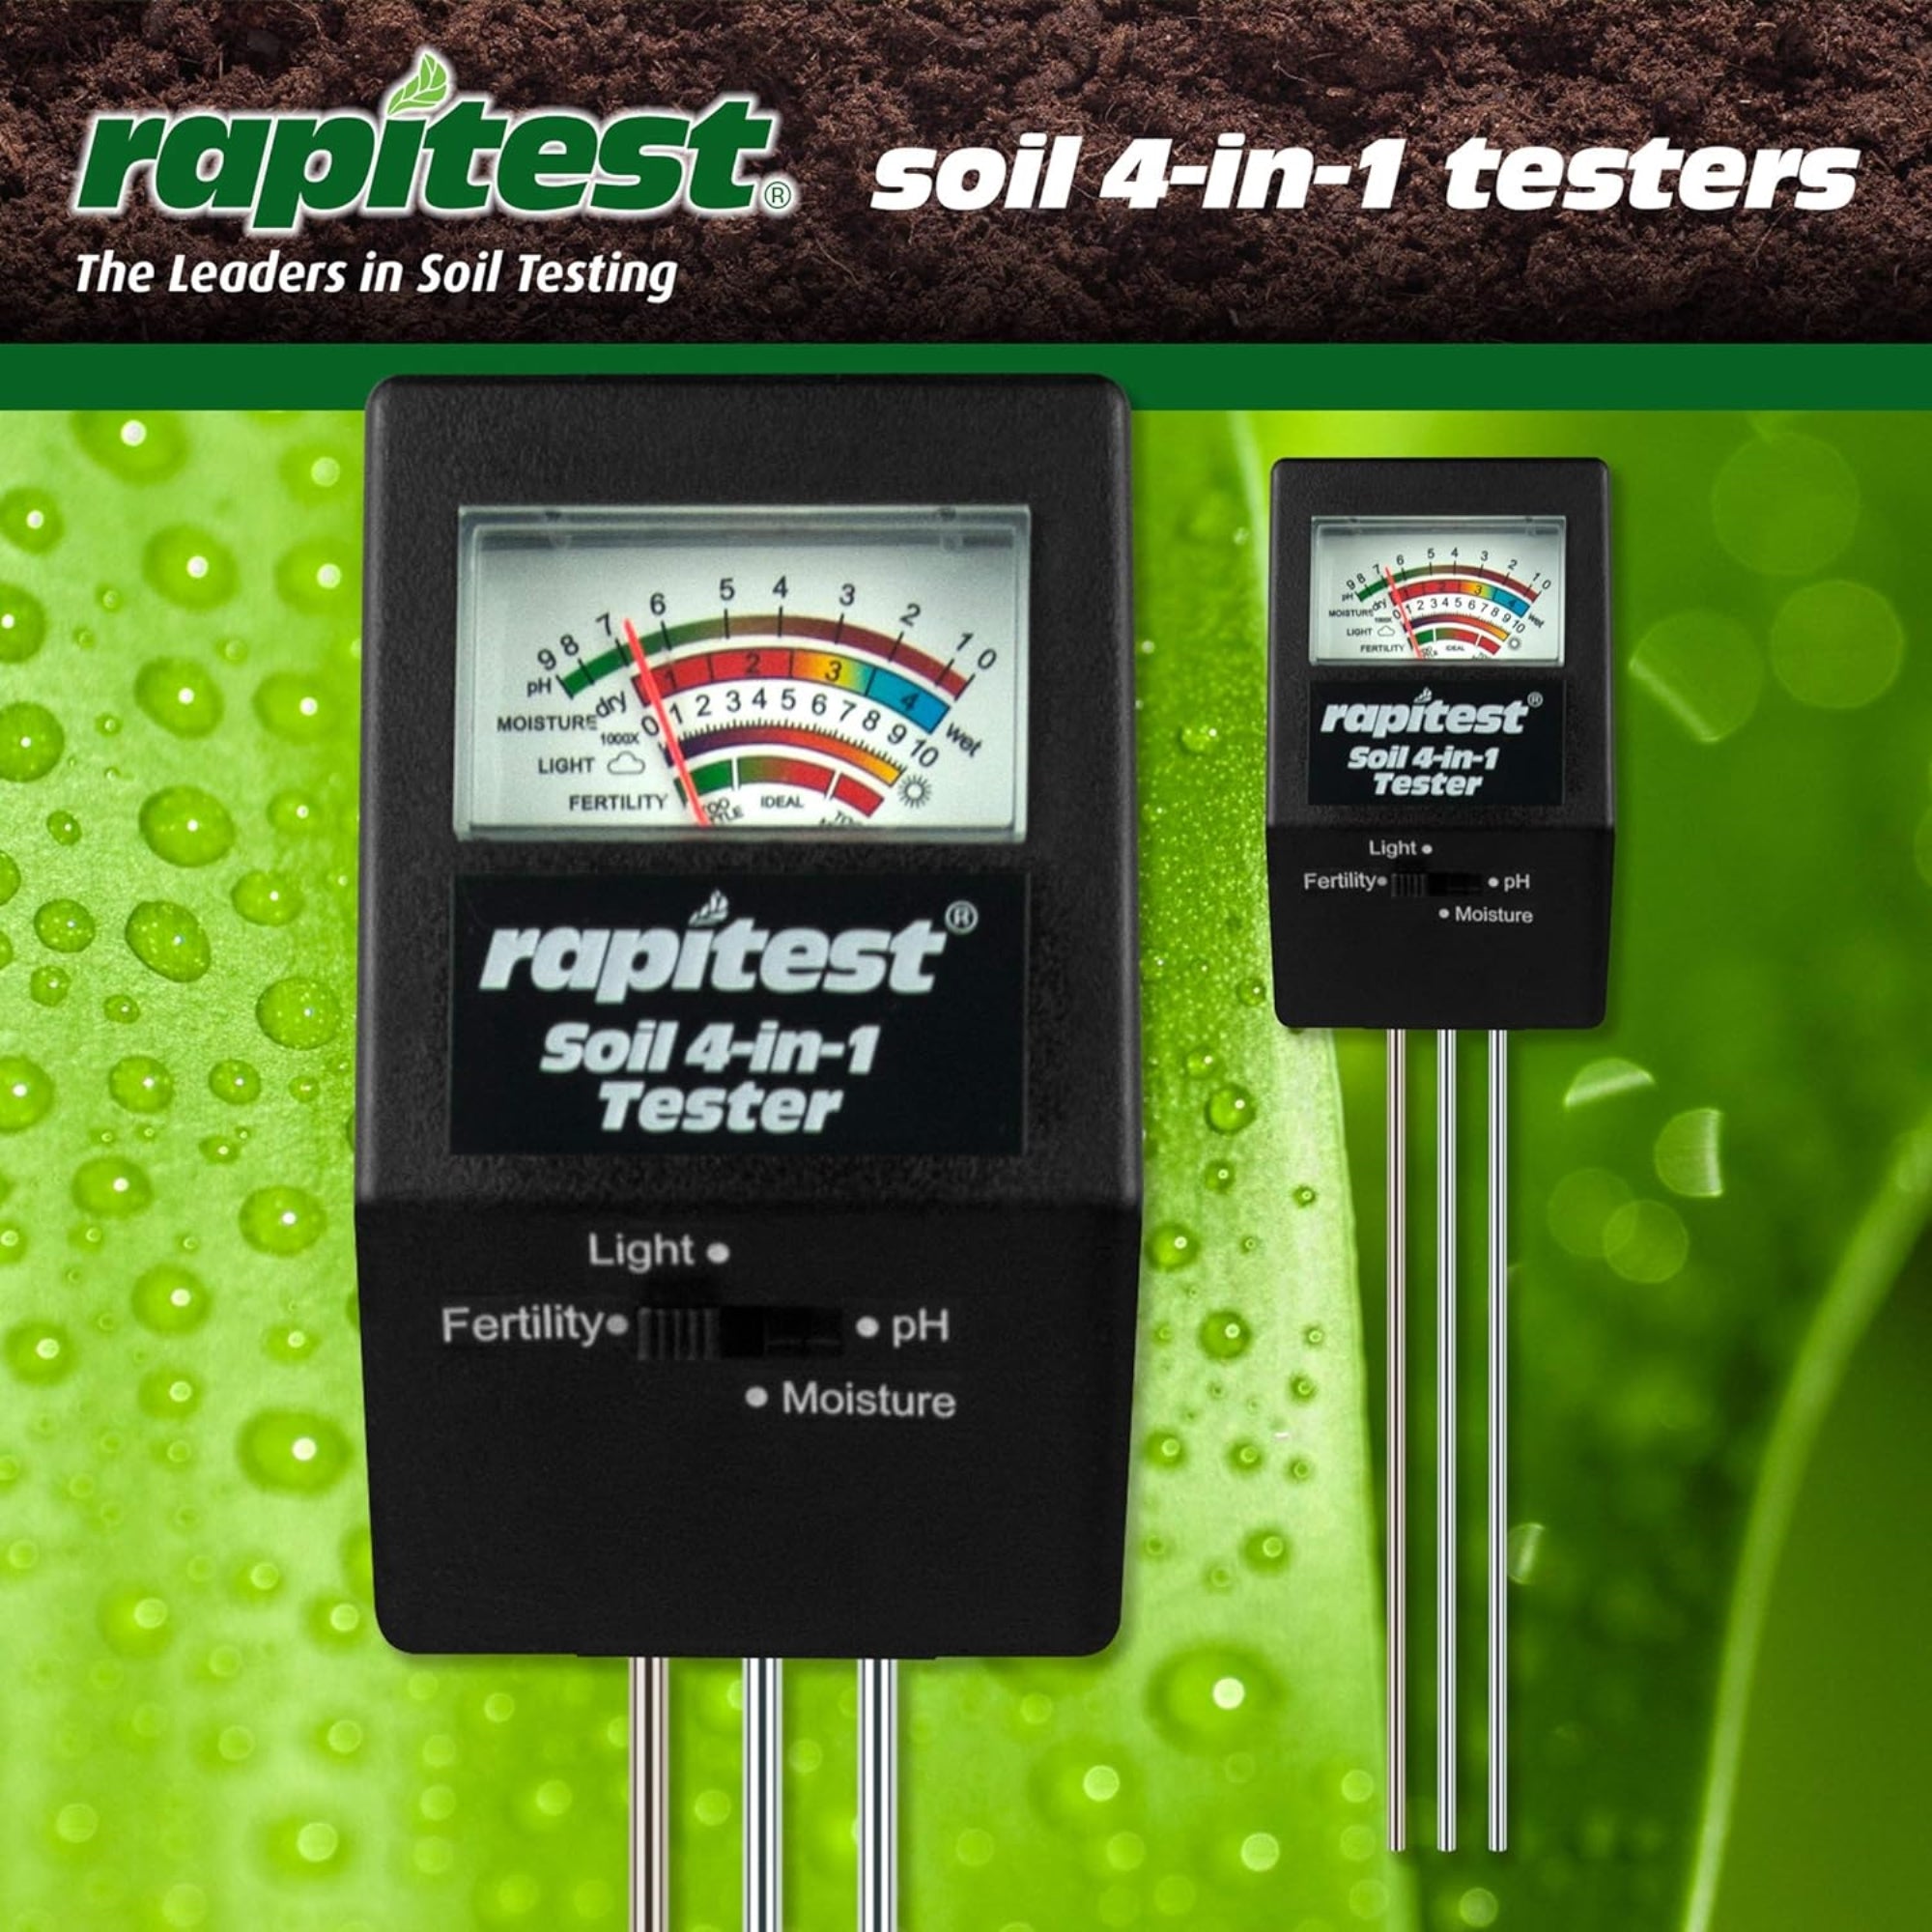 Luster Leaf Rapitest 4in1 Soil pH Moisture Fertility Light Tester, Use for Flowers, Veggies/Fruit and Landscape Plants